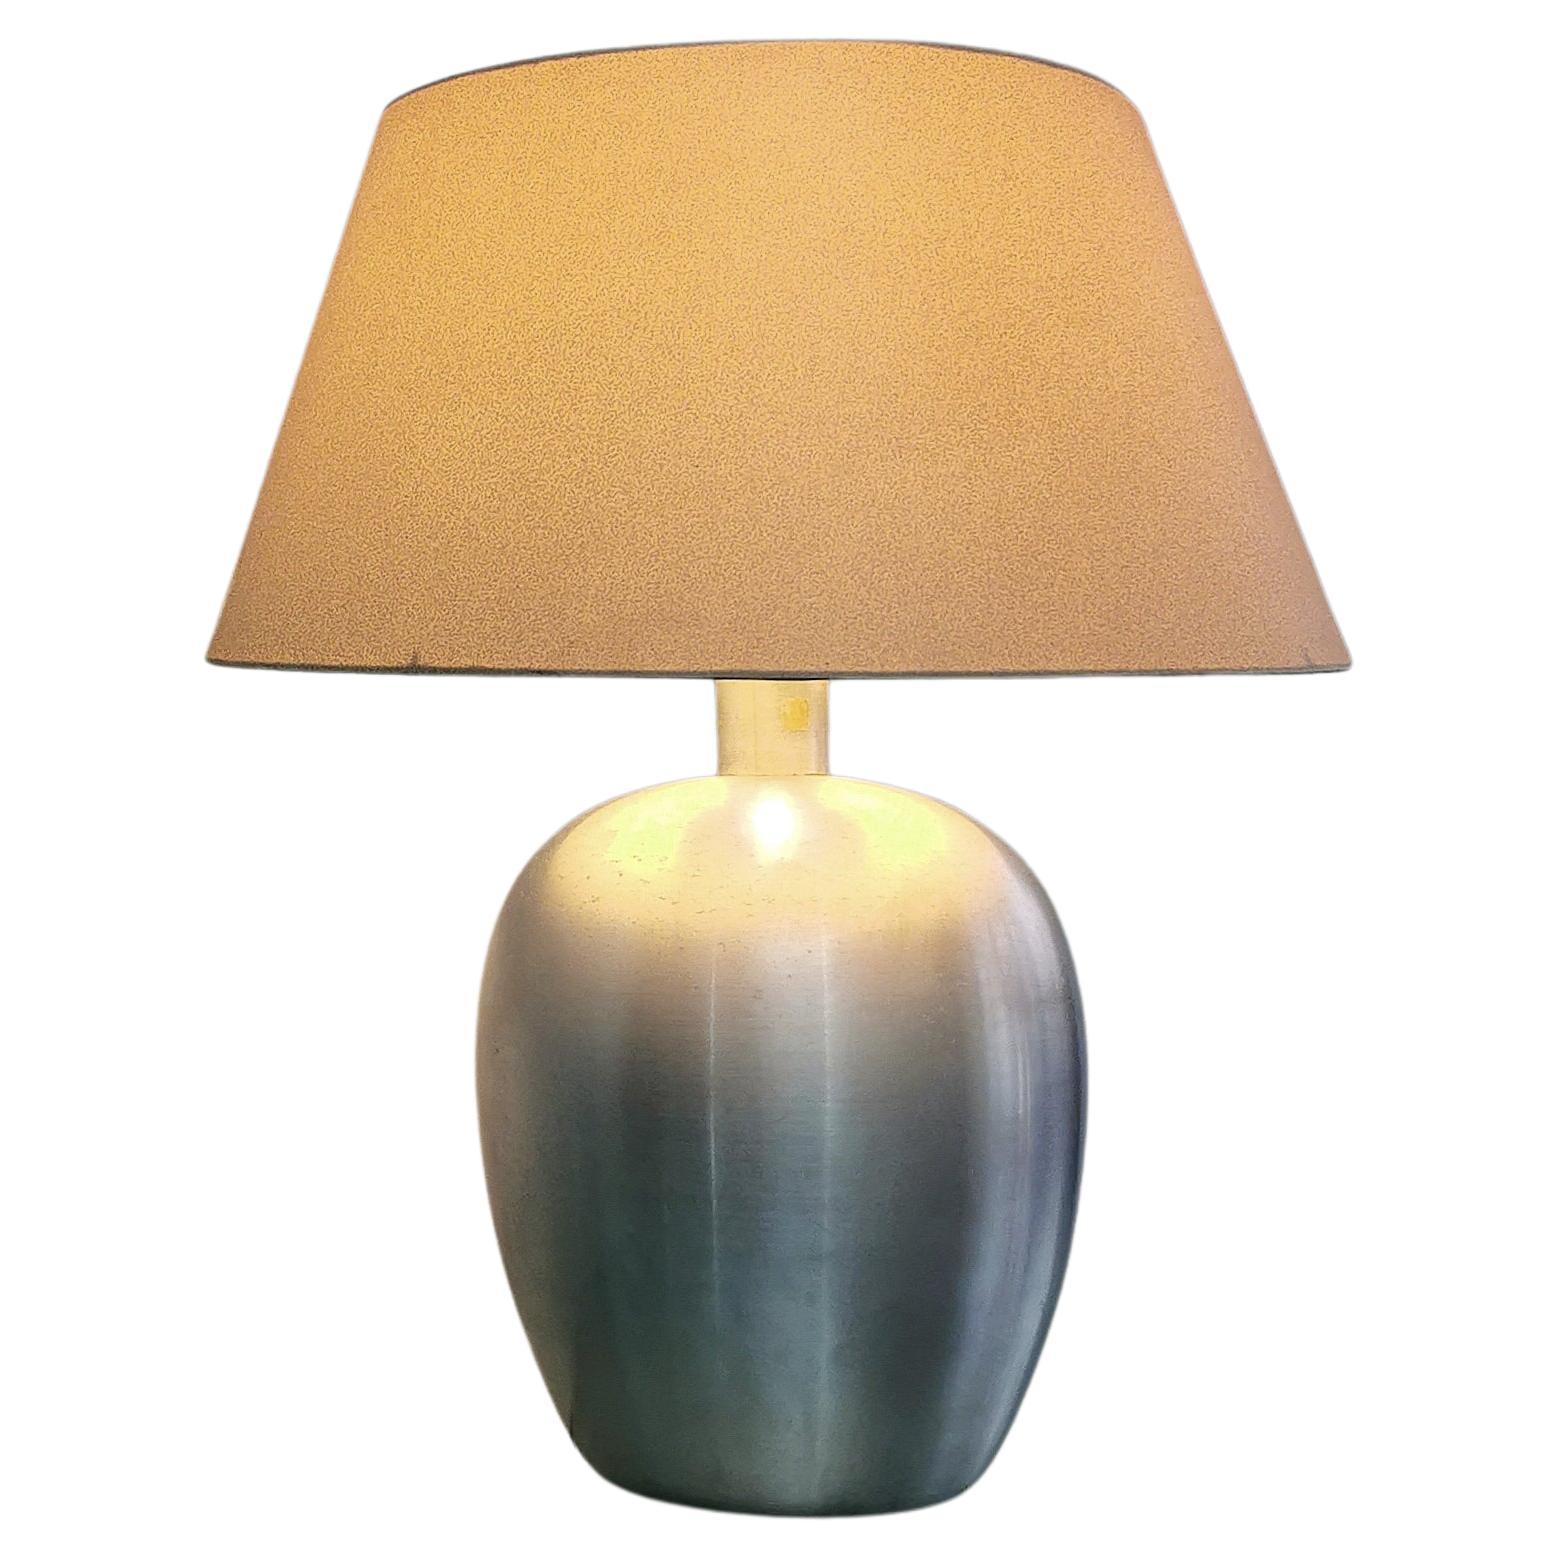 Lampe de table à 1 lumière E27 produite en Italie dans les années 70. La lampe a été fabriquée en aluminium brossé avec un abat-jour en tissu.



Note : Nous essayons d'offrir à nos clients un excellent service, même pour les envois dans le monde